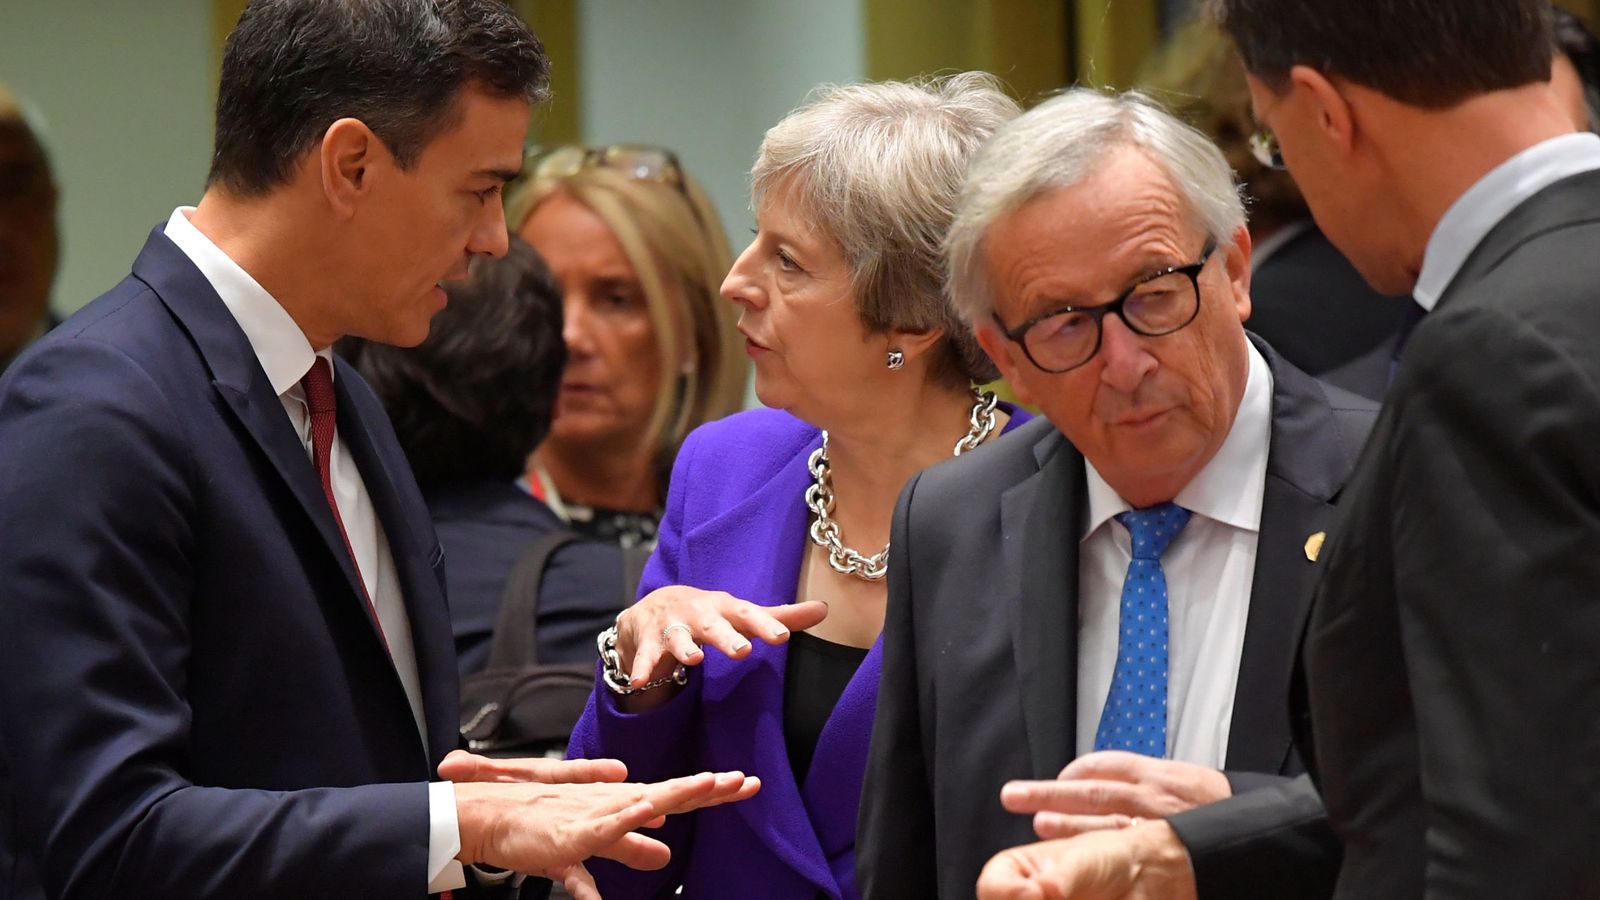 Foto: Pedro Sánchez conversa con Theresa May ante Jean-Claude Juncker el pasado 18 de octubre en Bruselas. (Reuters)